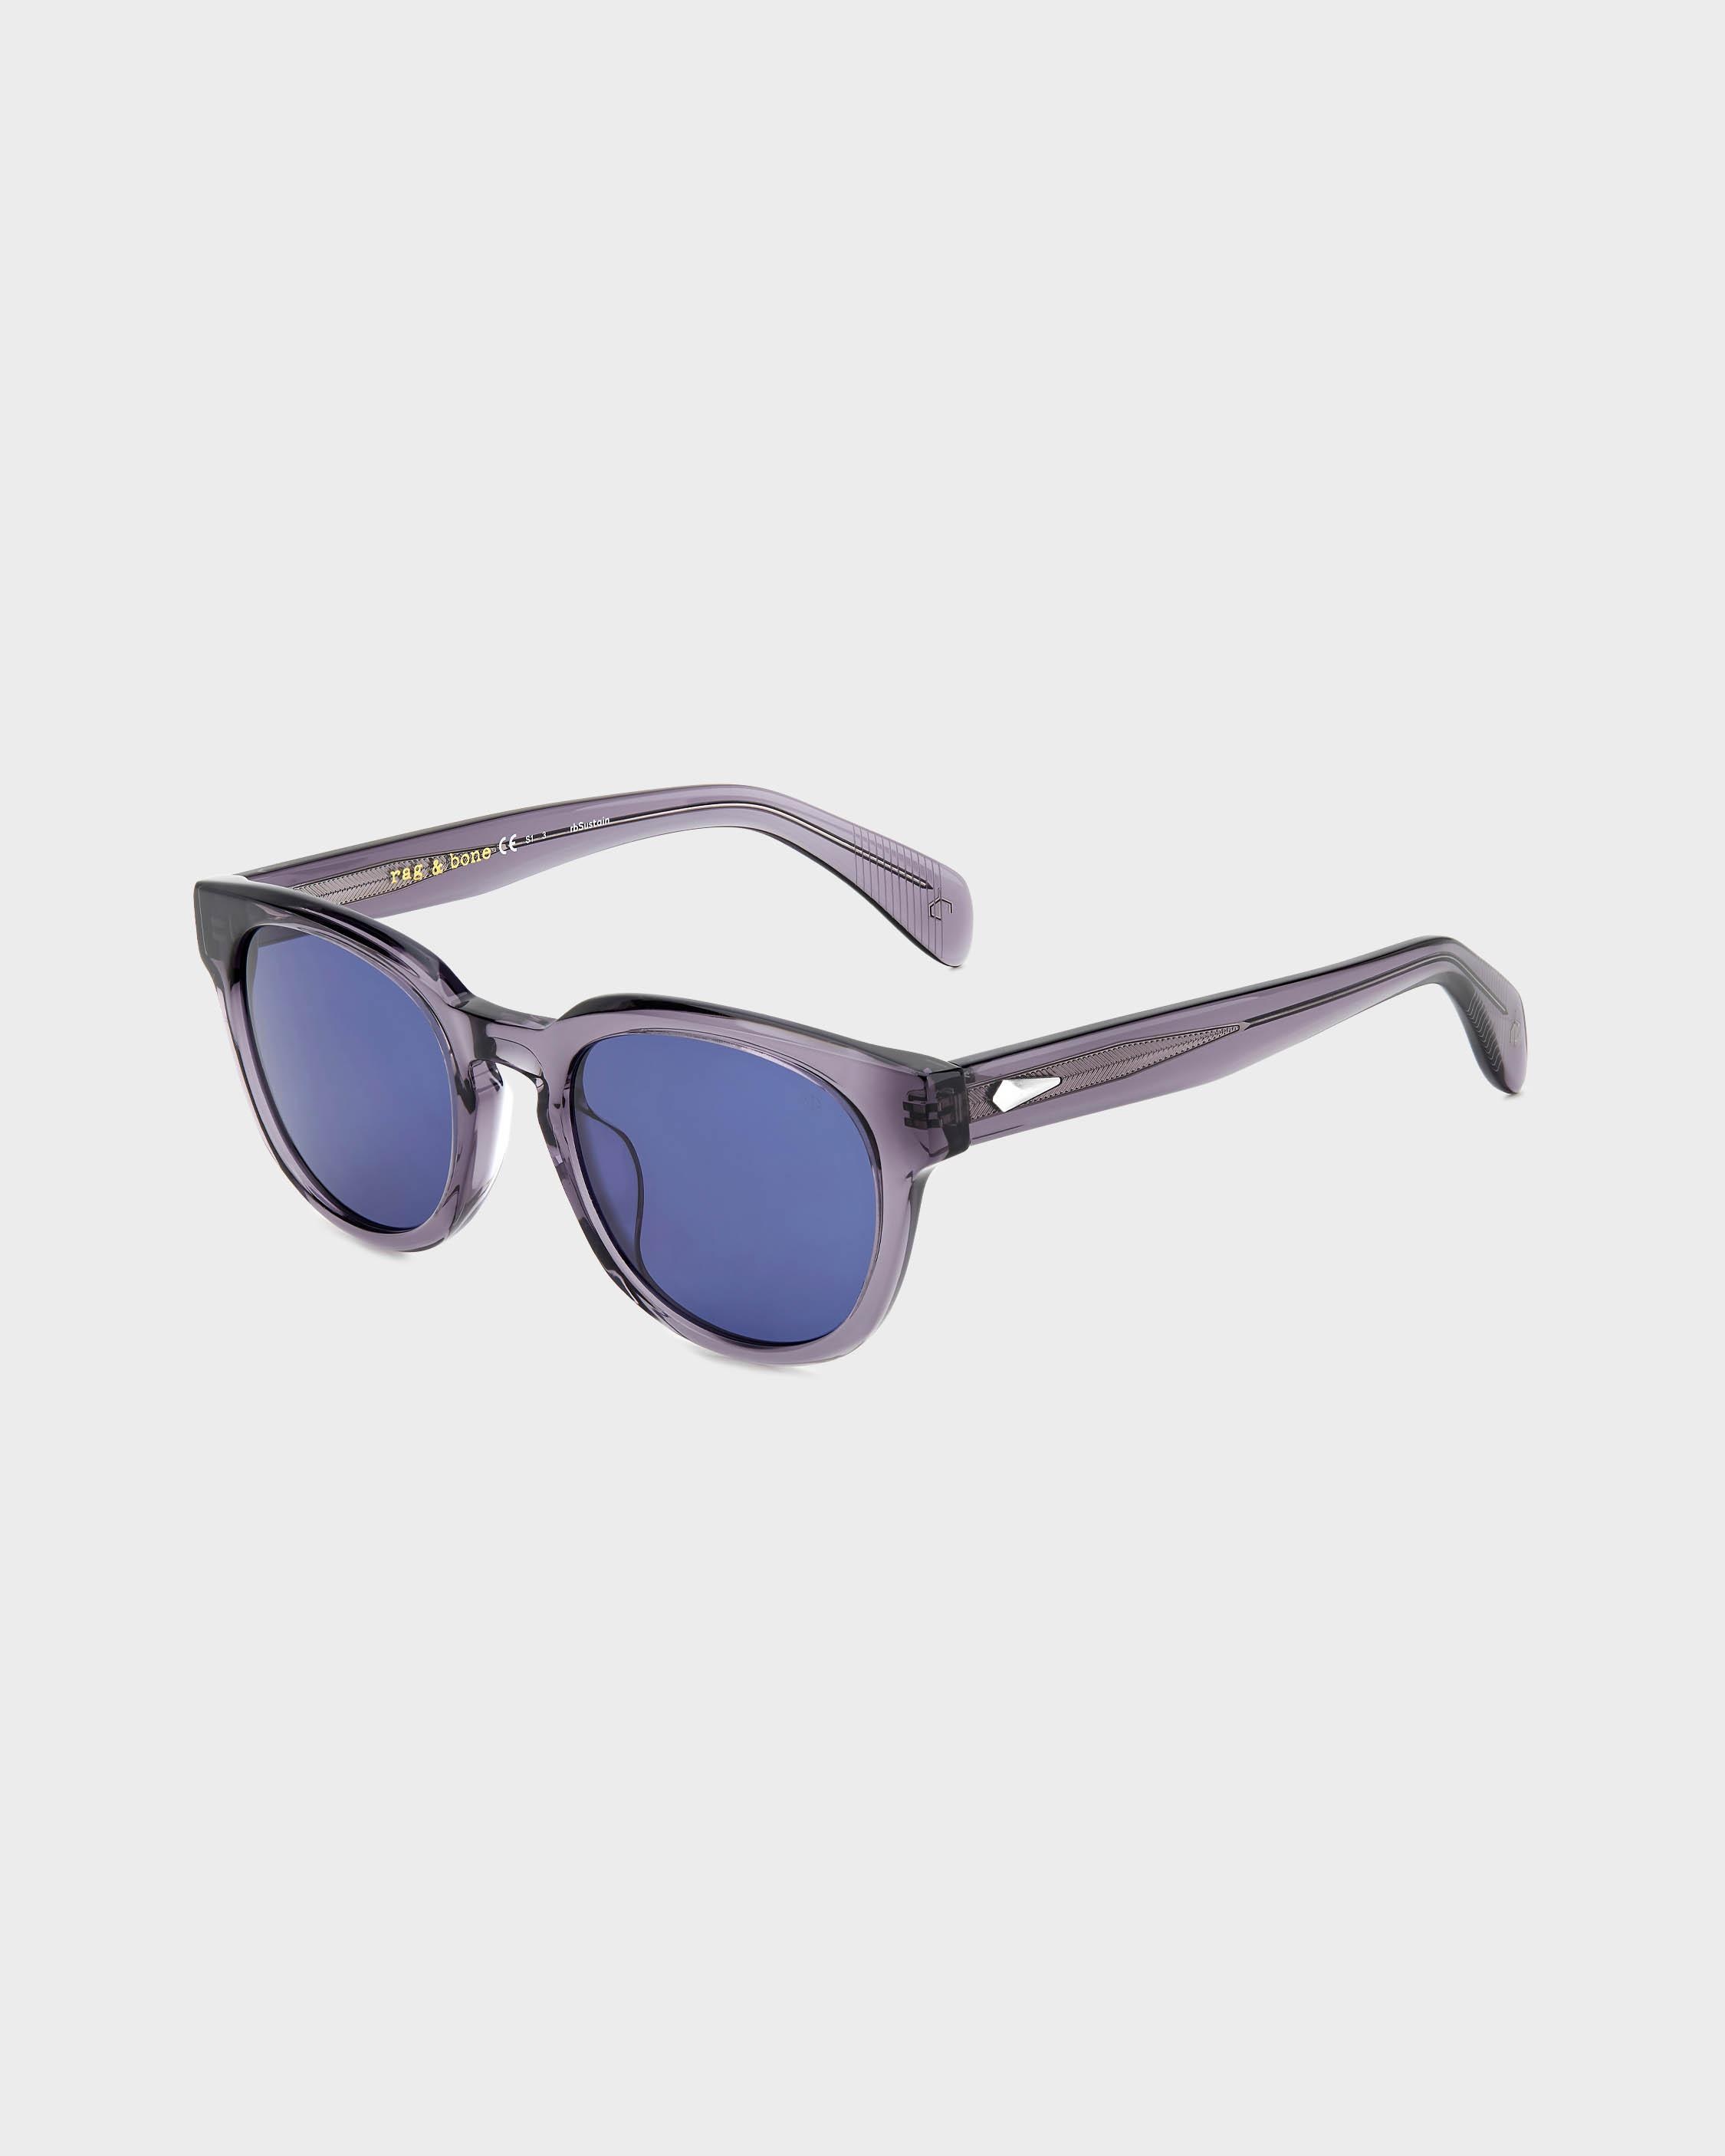 Slayton
Oval Sunglasses - 1